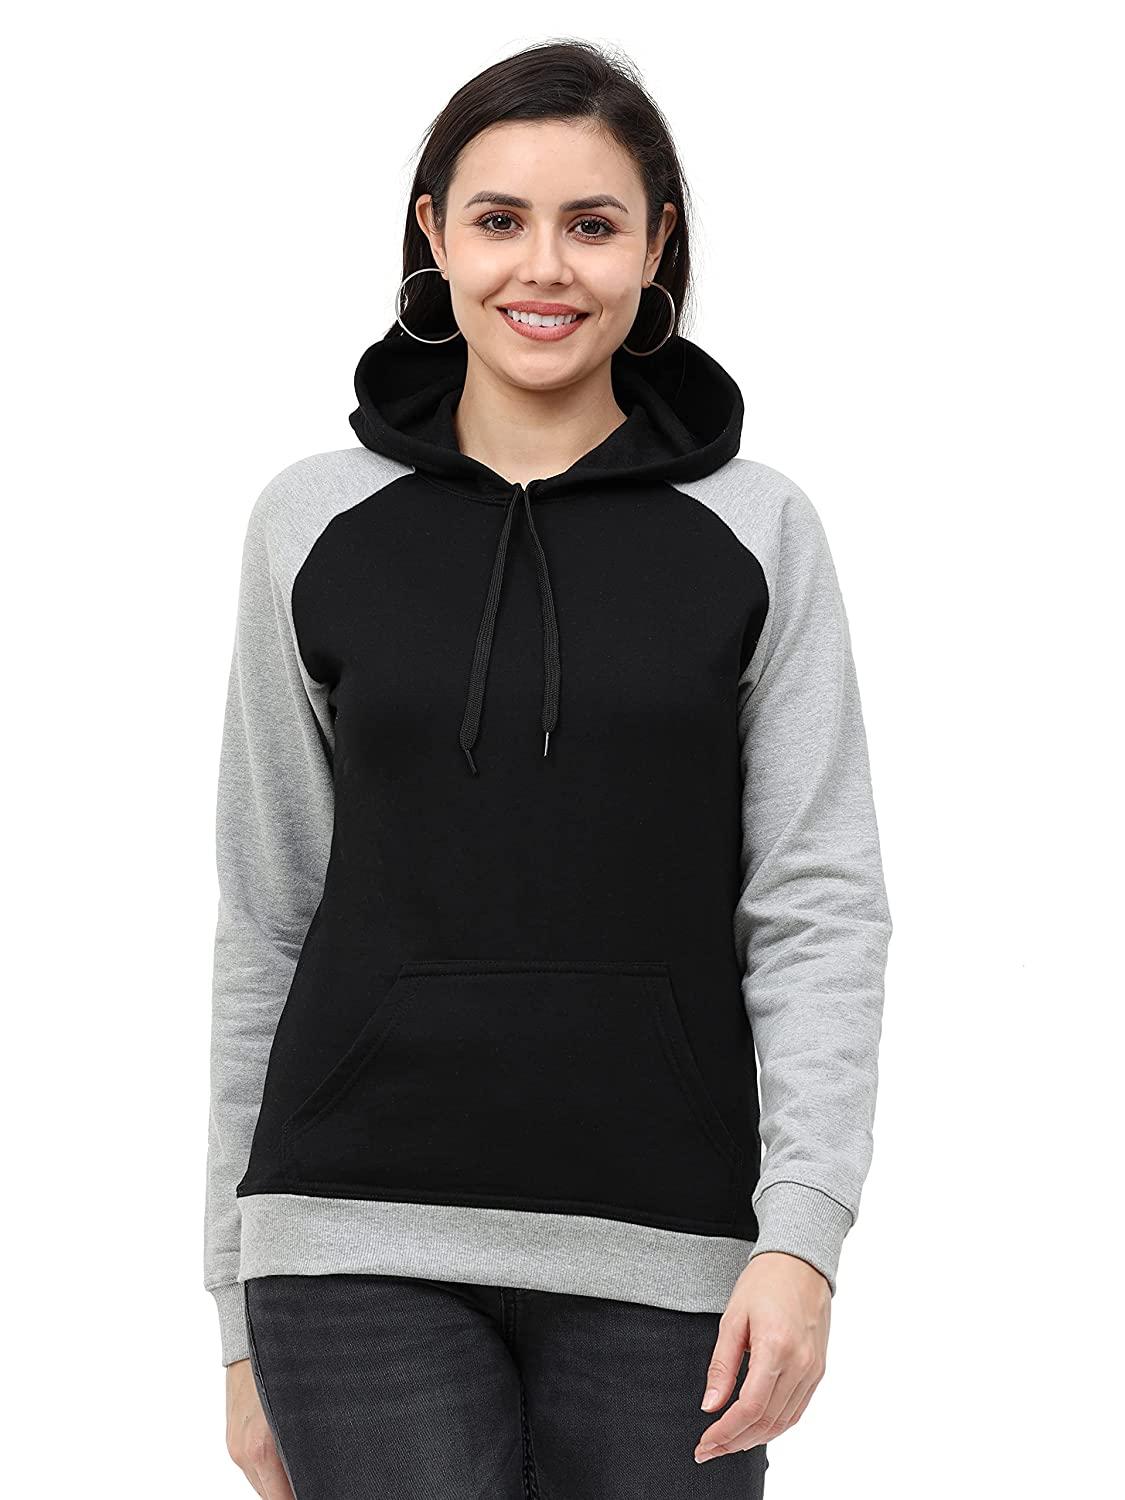 women's-cotton-color-block-raglan-full-sleeve-sweatshirt/hoodies